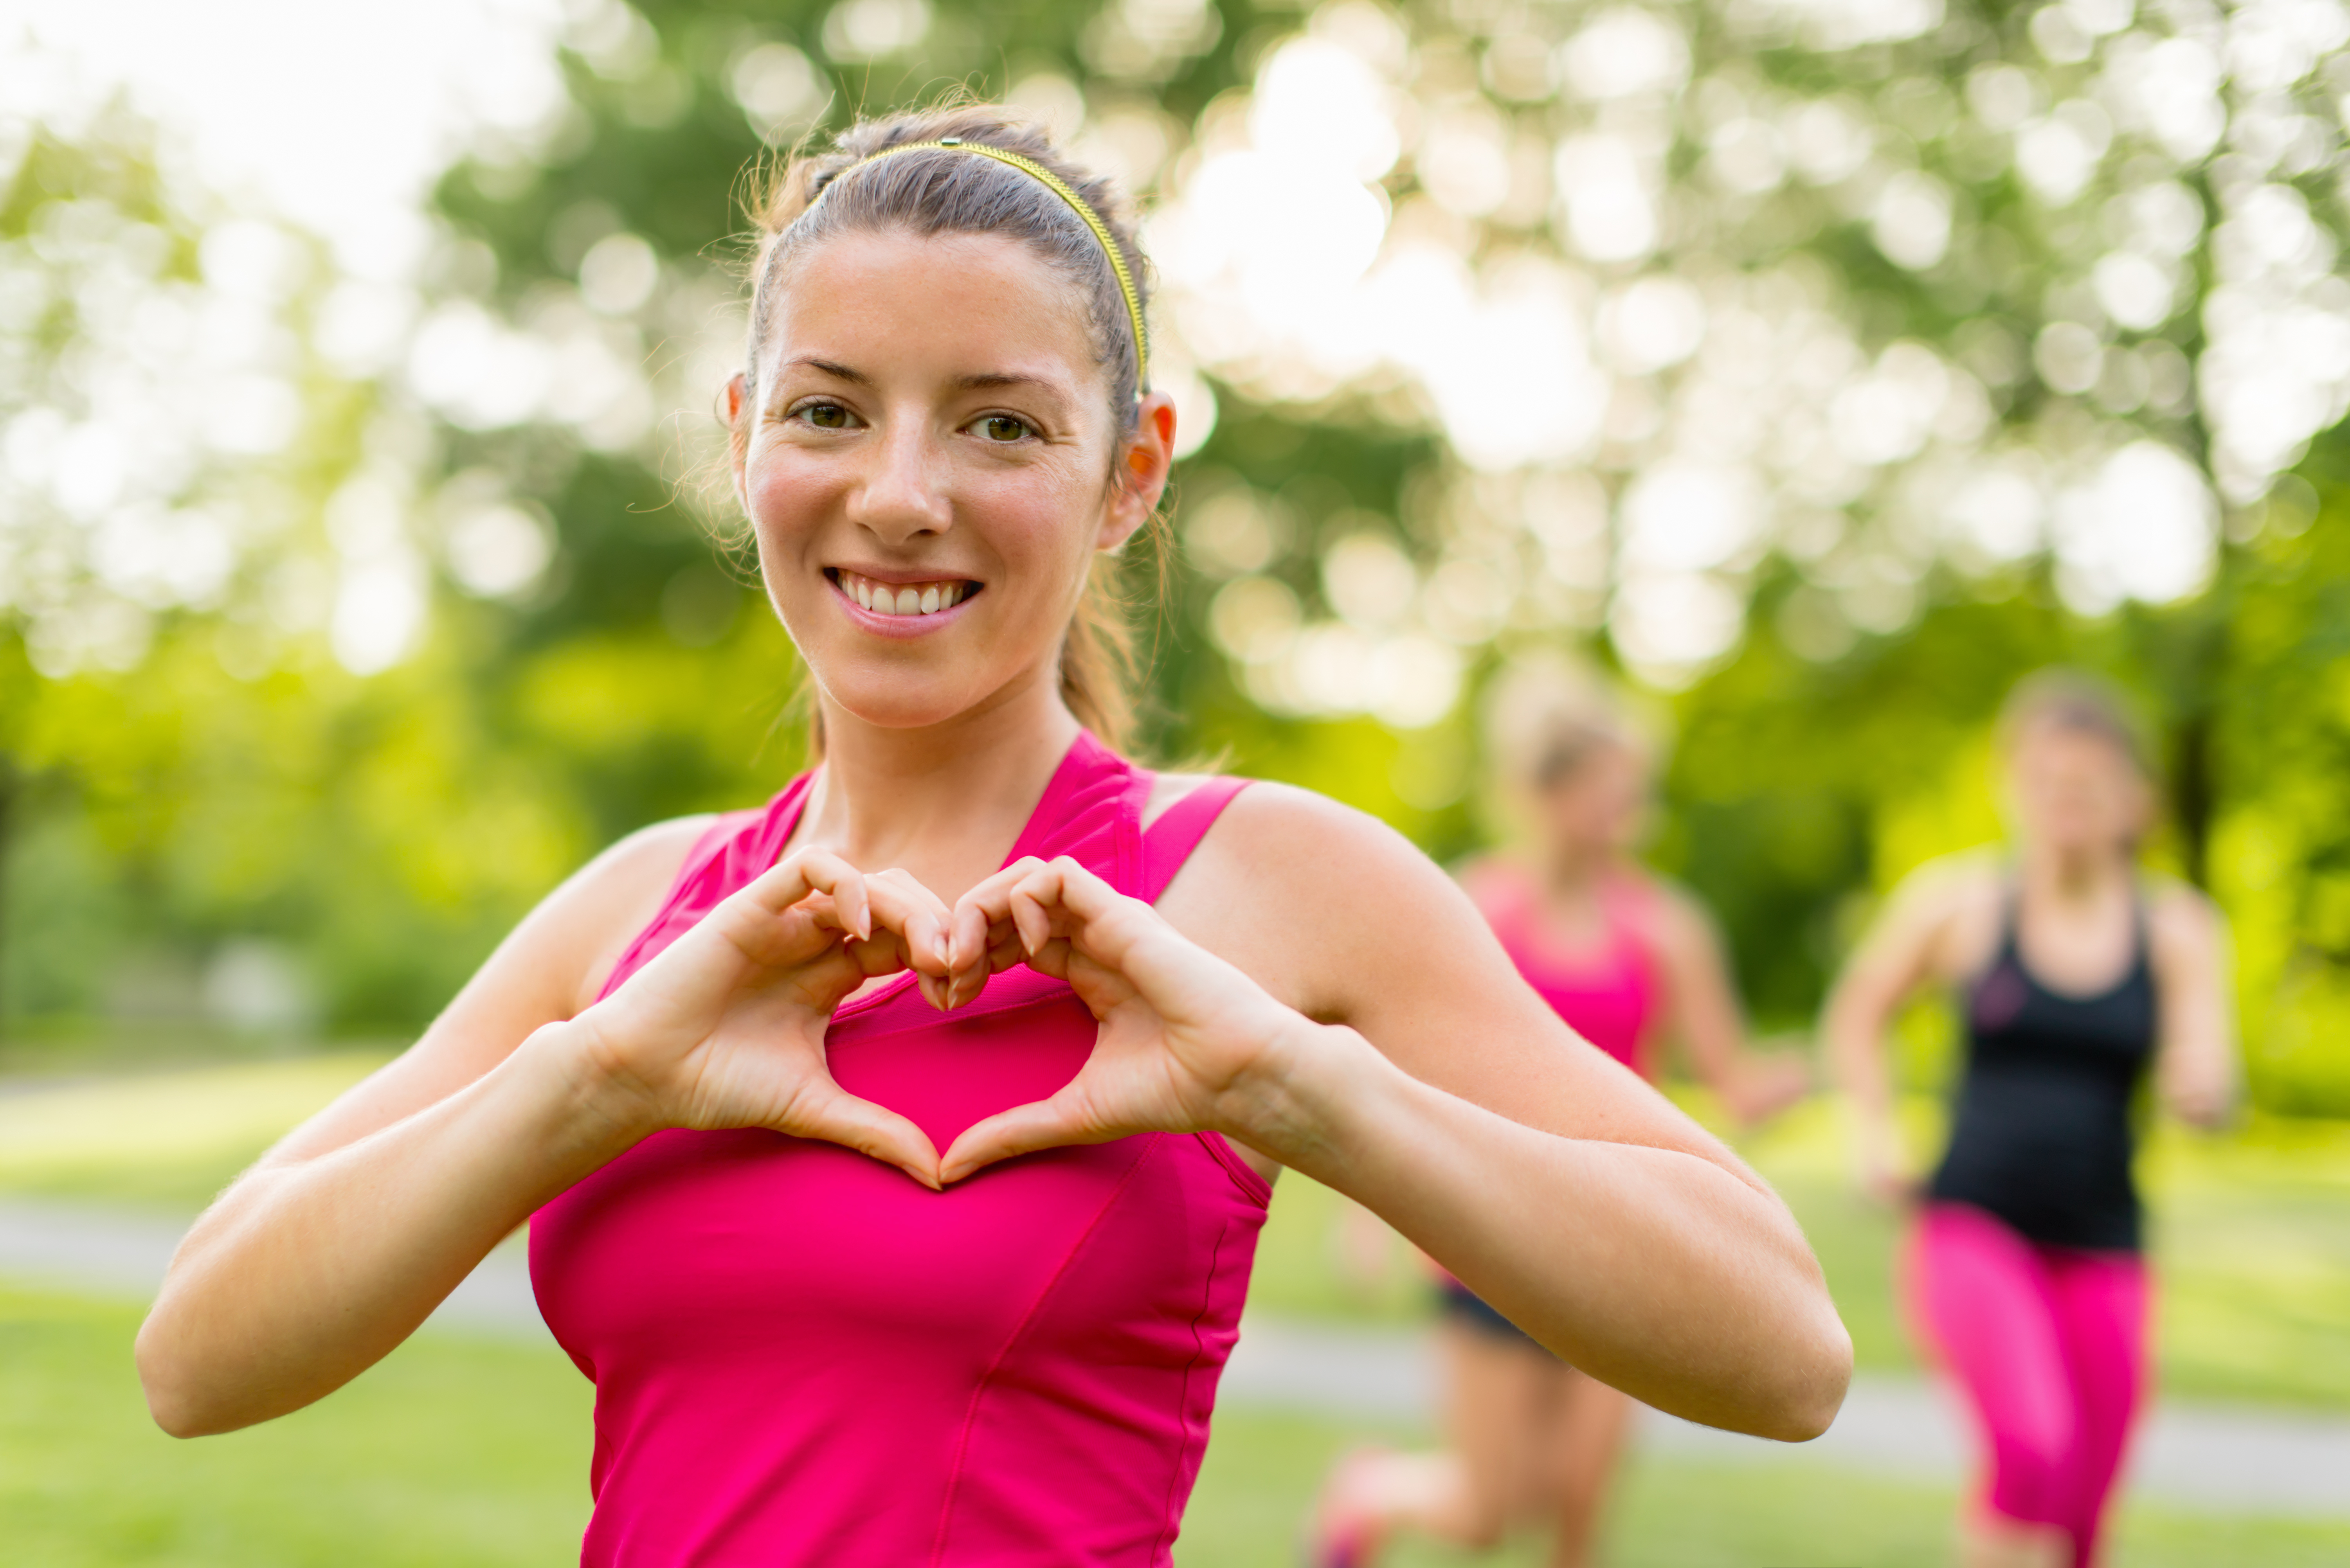 Düzenli Egzersizler Kalp Hastalıklarının Oranını Düşürür Mü?